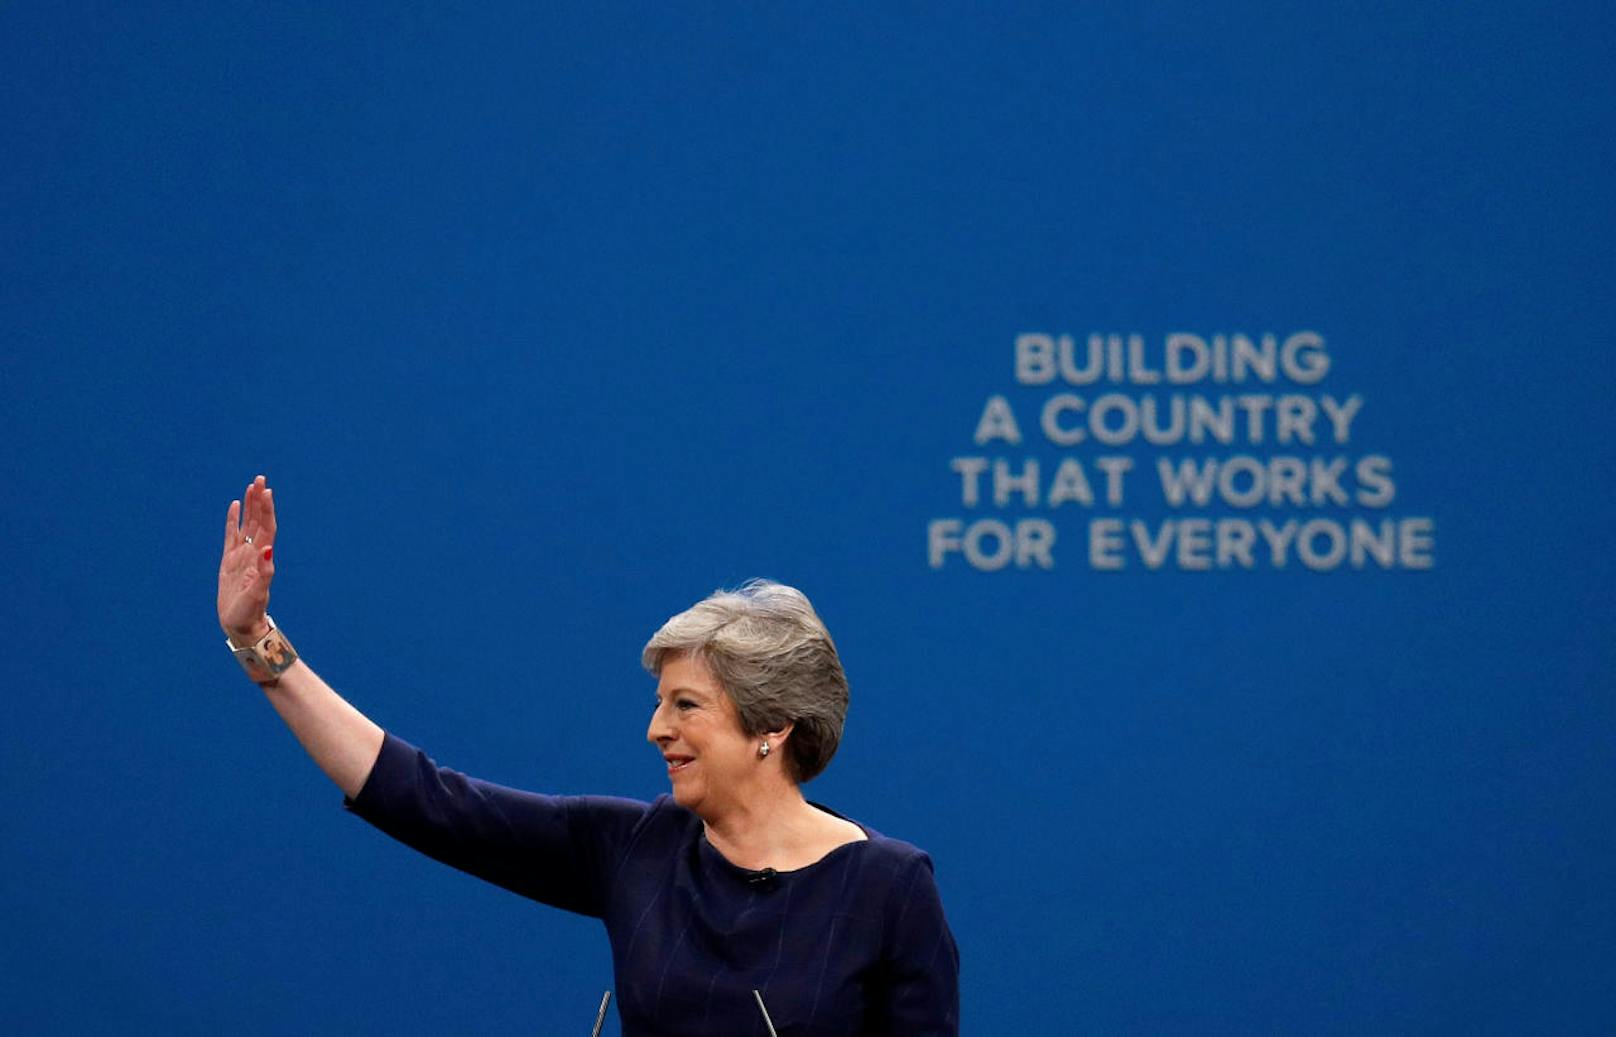 "Ein Land aufbauen, das allen passt", lautete der Slogan der Tories. Doch zum Ende der Rede ...